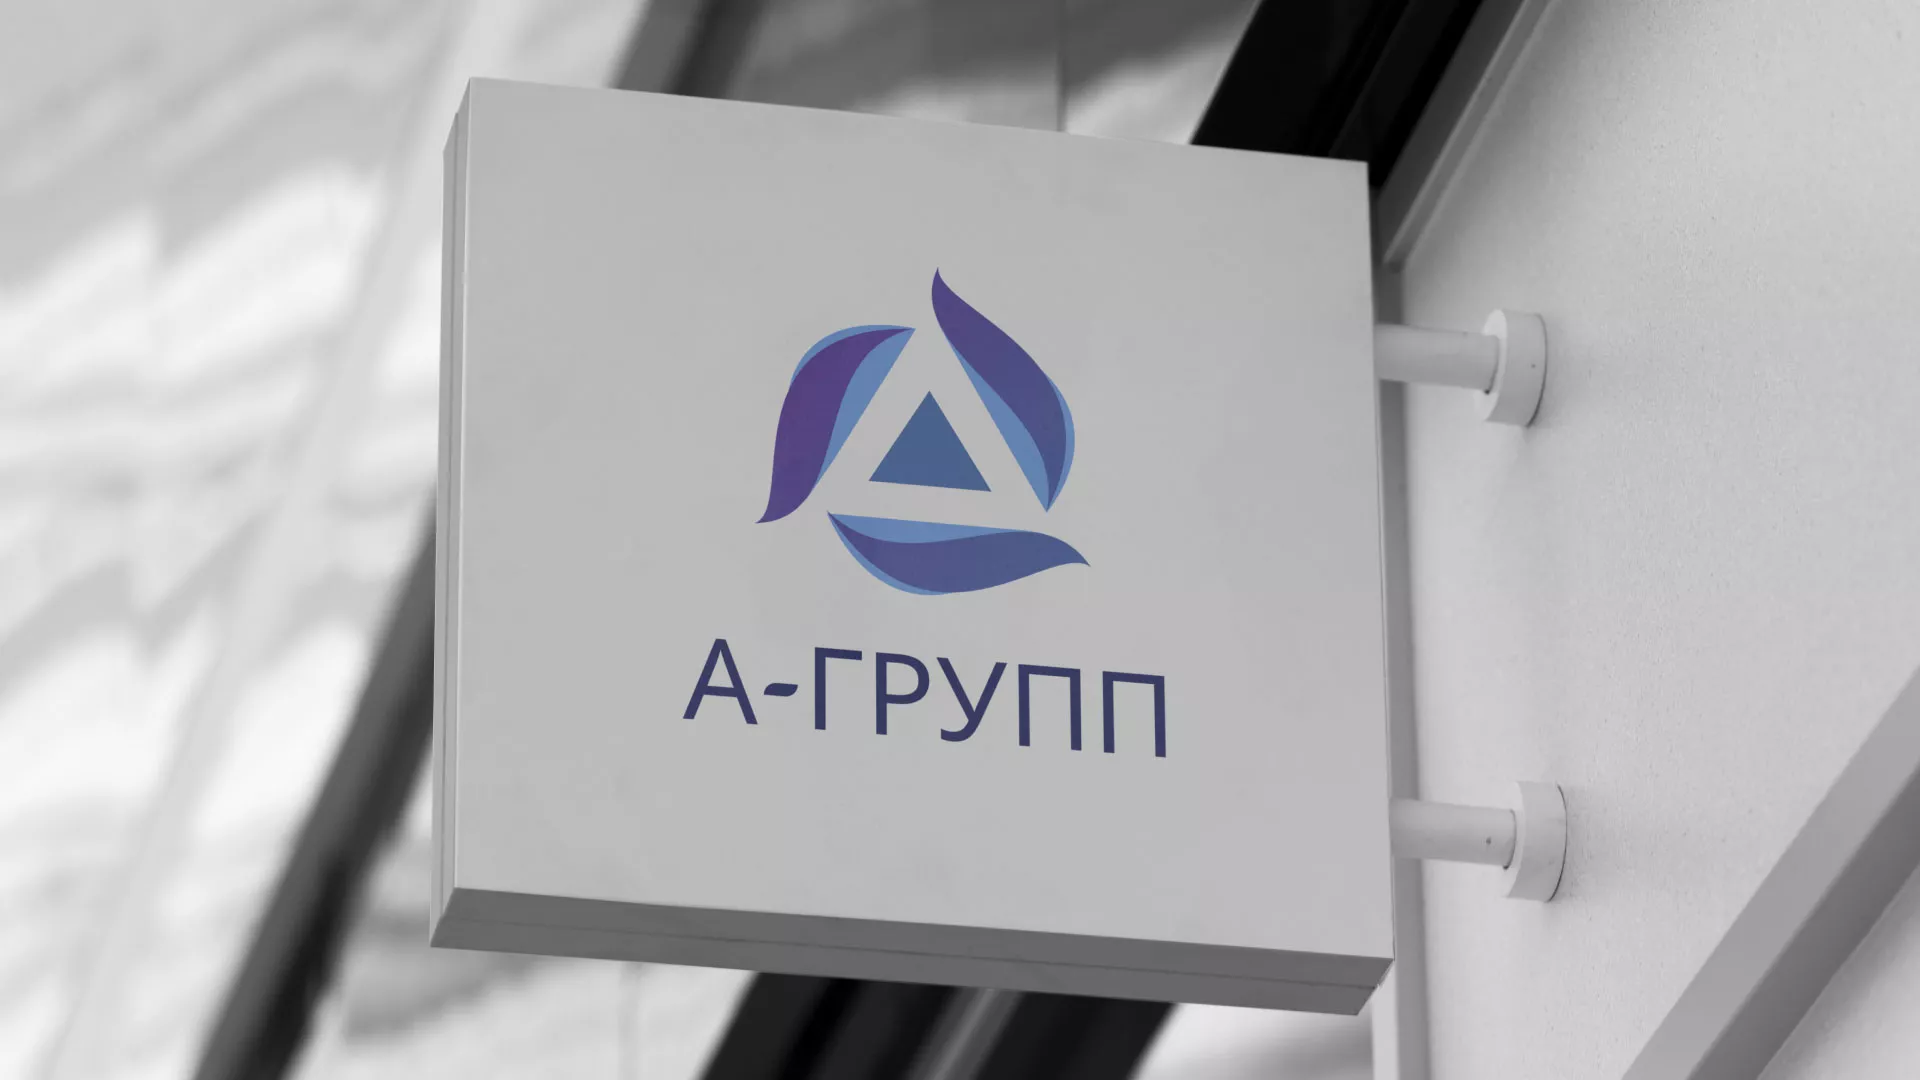 Создание логотипа компании «А-ГРУПП» в Ладушкине